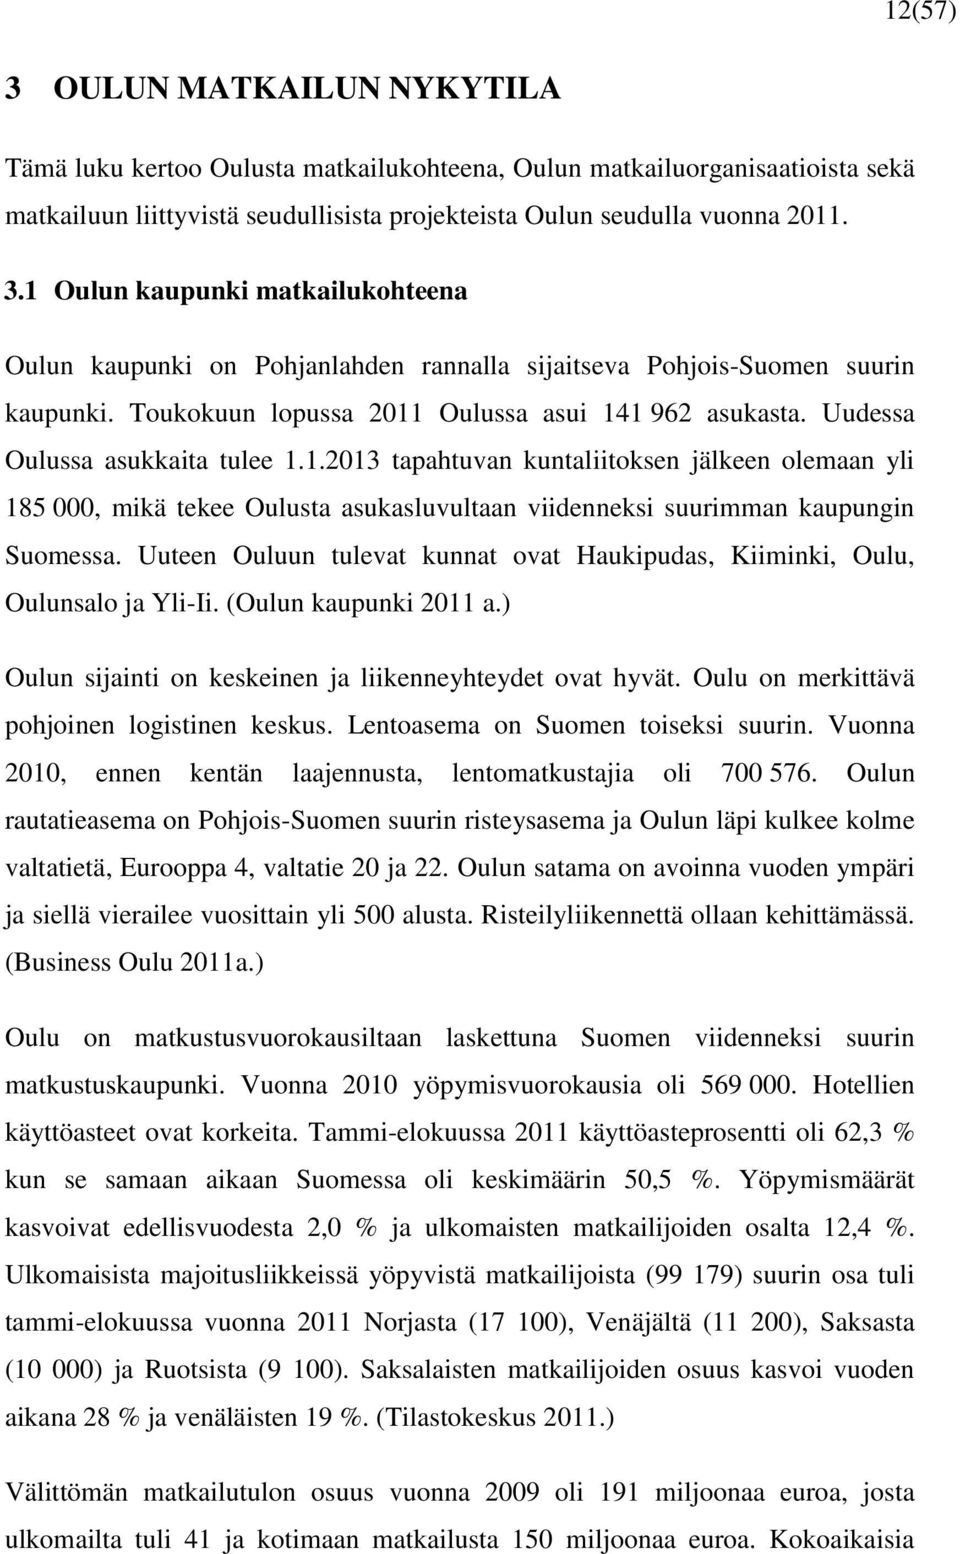 Uuteen Ouluun tulevat kunnat ovat Haukipudas, Kiiminki, Oulu, Oulunsalo ja Yli-Ii. (Oulun kaupunki 2011 a.) Oulun sijainti on keskeinen ja liikenneyhteydet ovat hyvät.